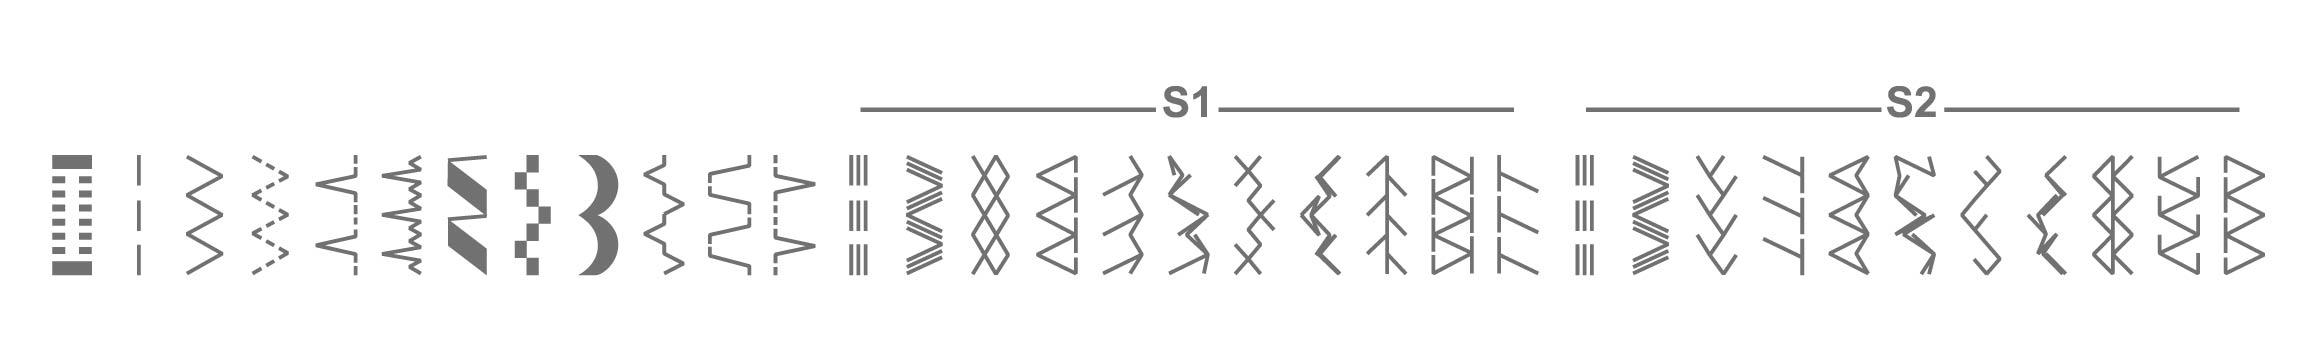 K132A Stitch Patterns